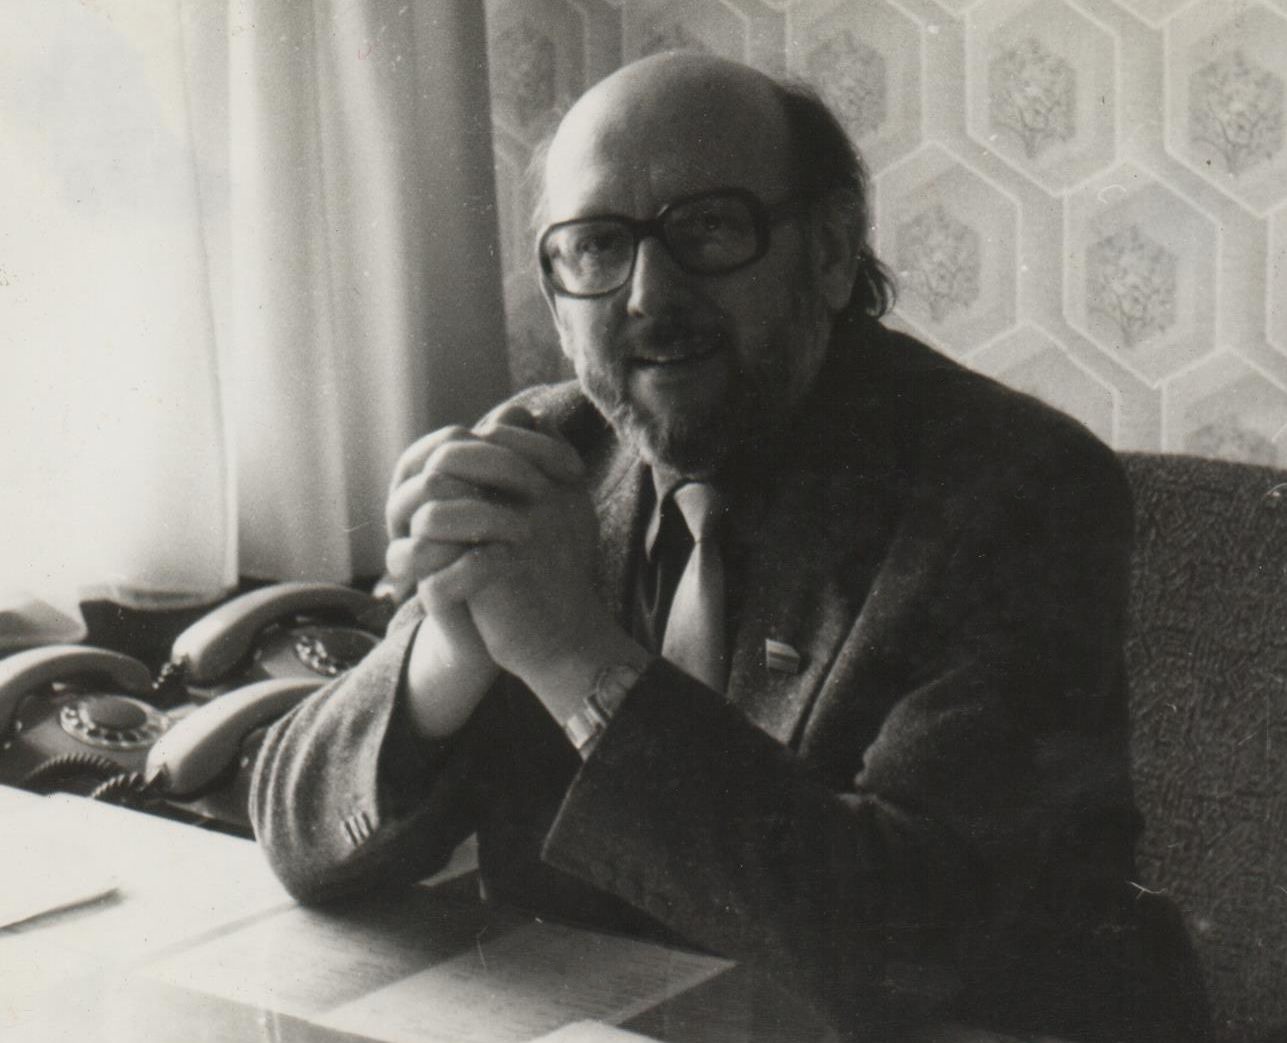 Aukščiausiosios Tarybos Švietimo, mokslo ir kultūros komisijos pirmininkas G. Ilgūnas savo darbo kabinete. 1990 m.